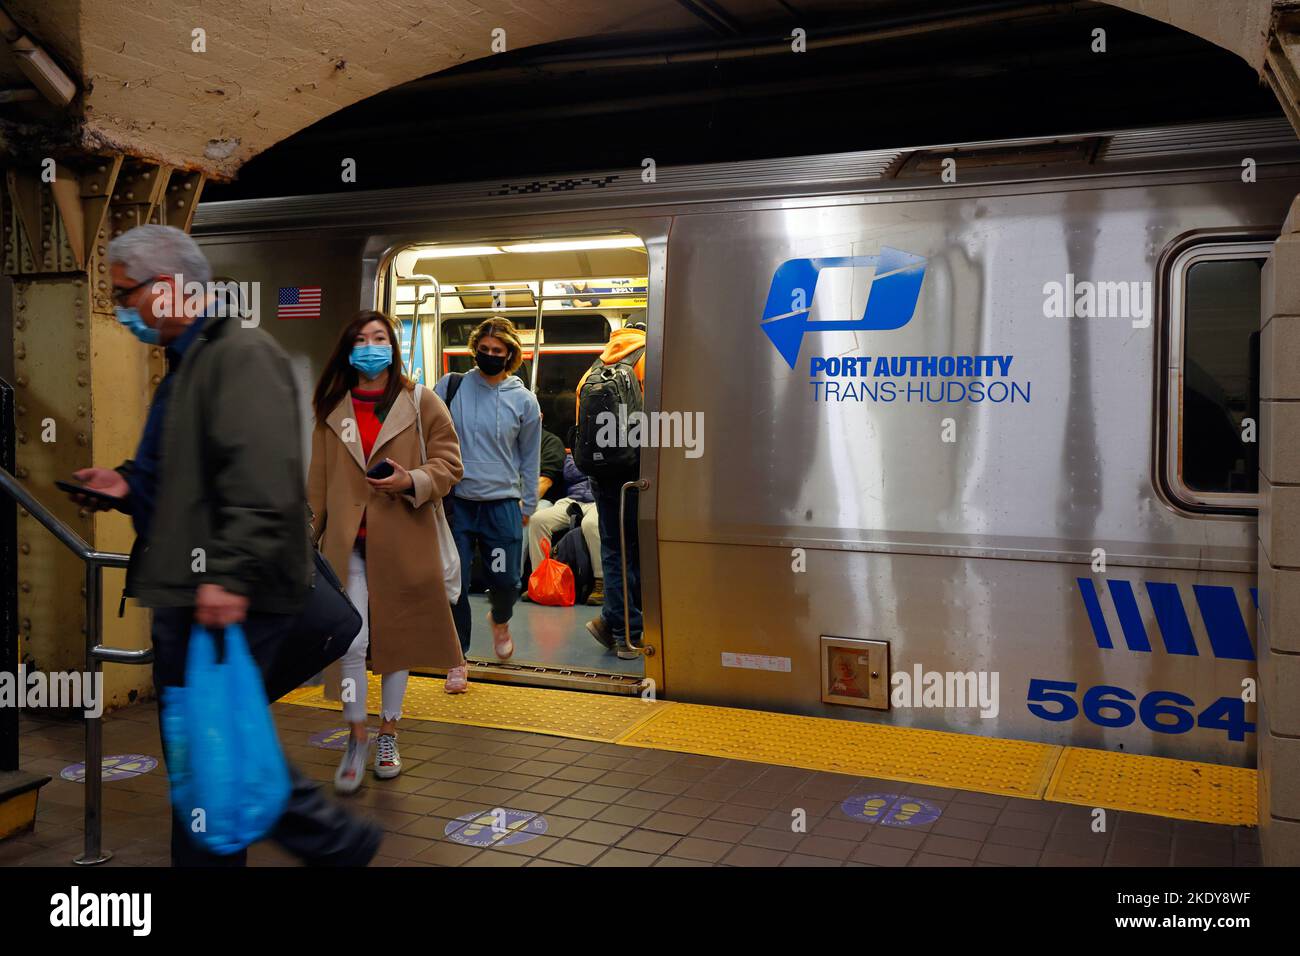 Persone che escono da un treno PERCORSO Trans Hudson Port Authority alla Grove Street Station a Jersey City, New Jersey. Aprile, 2022. Foto Stock